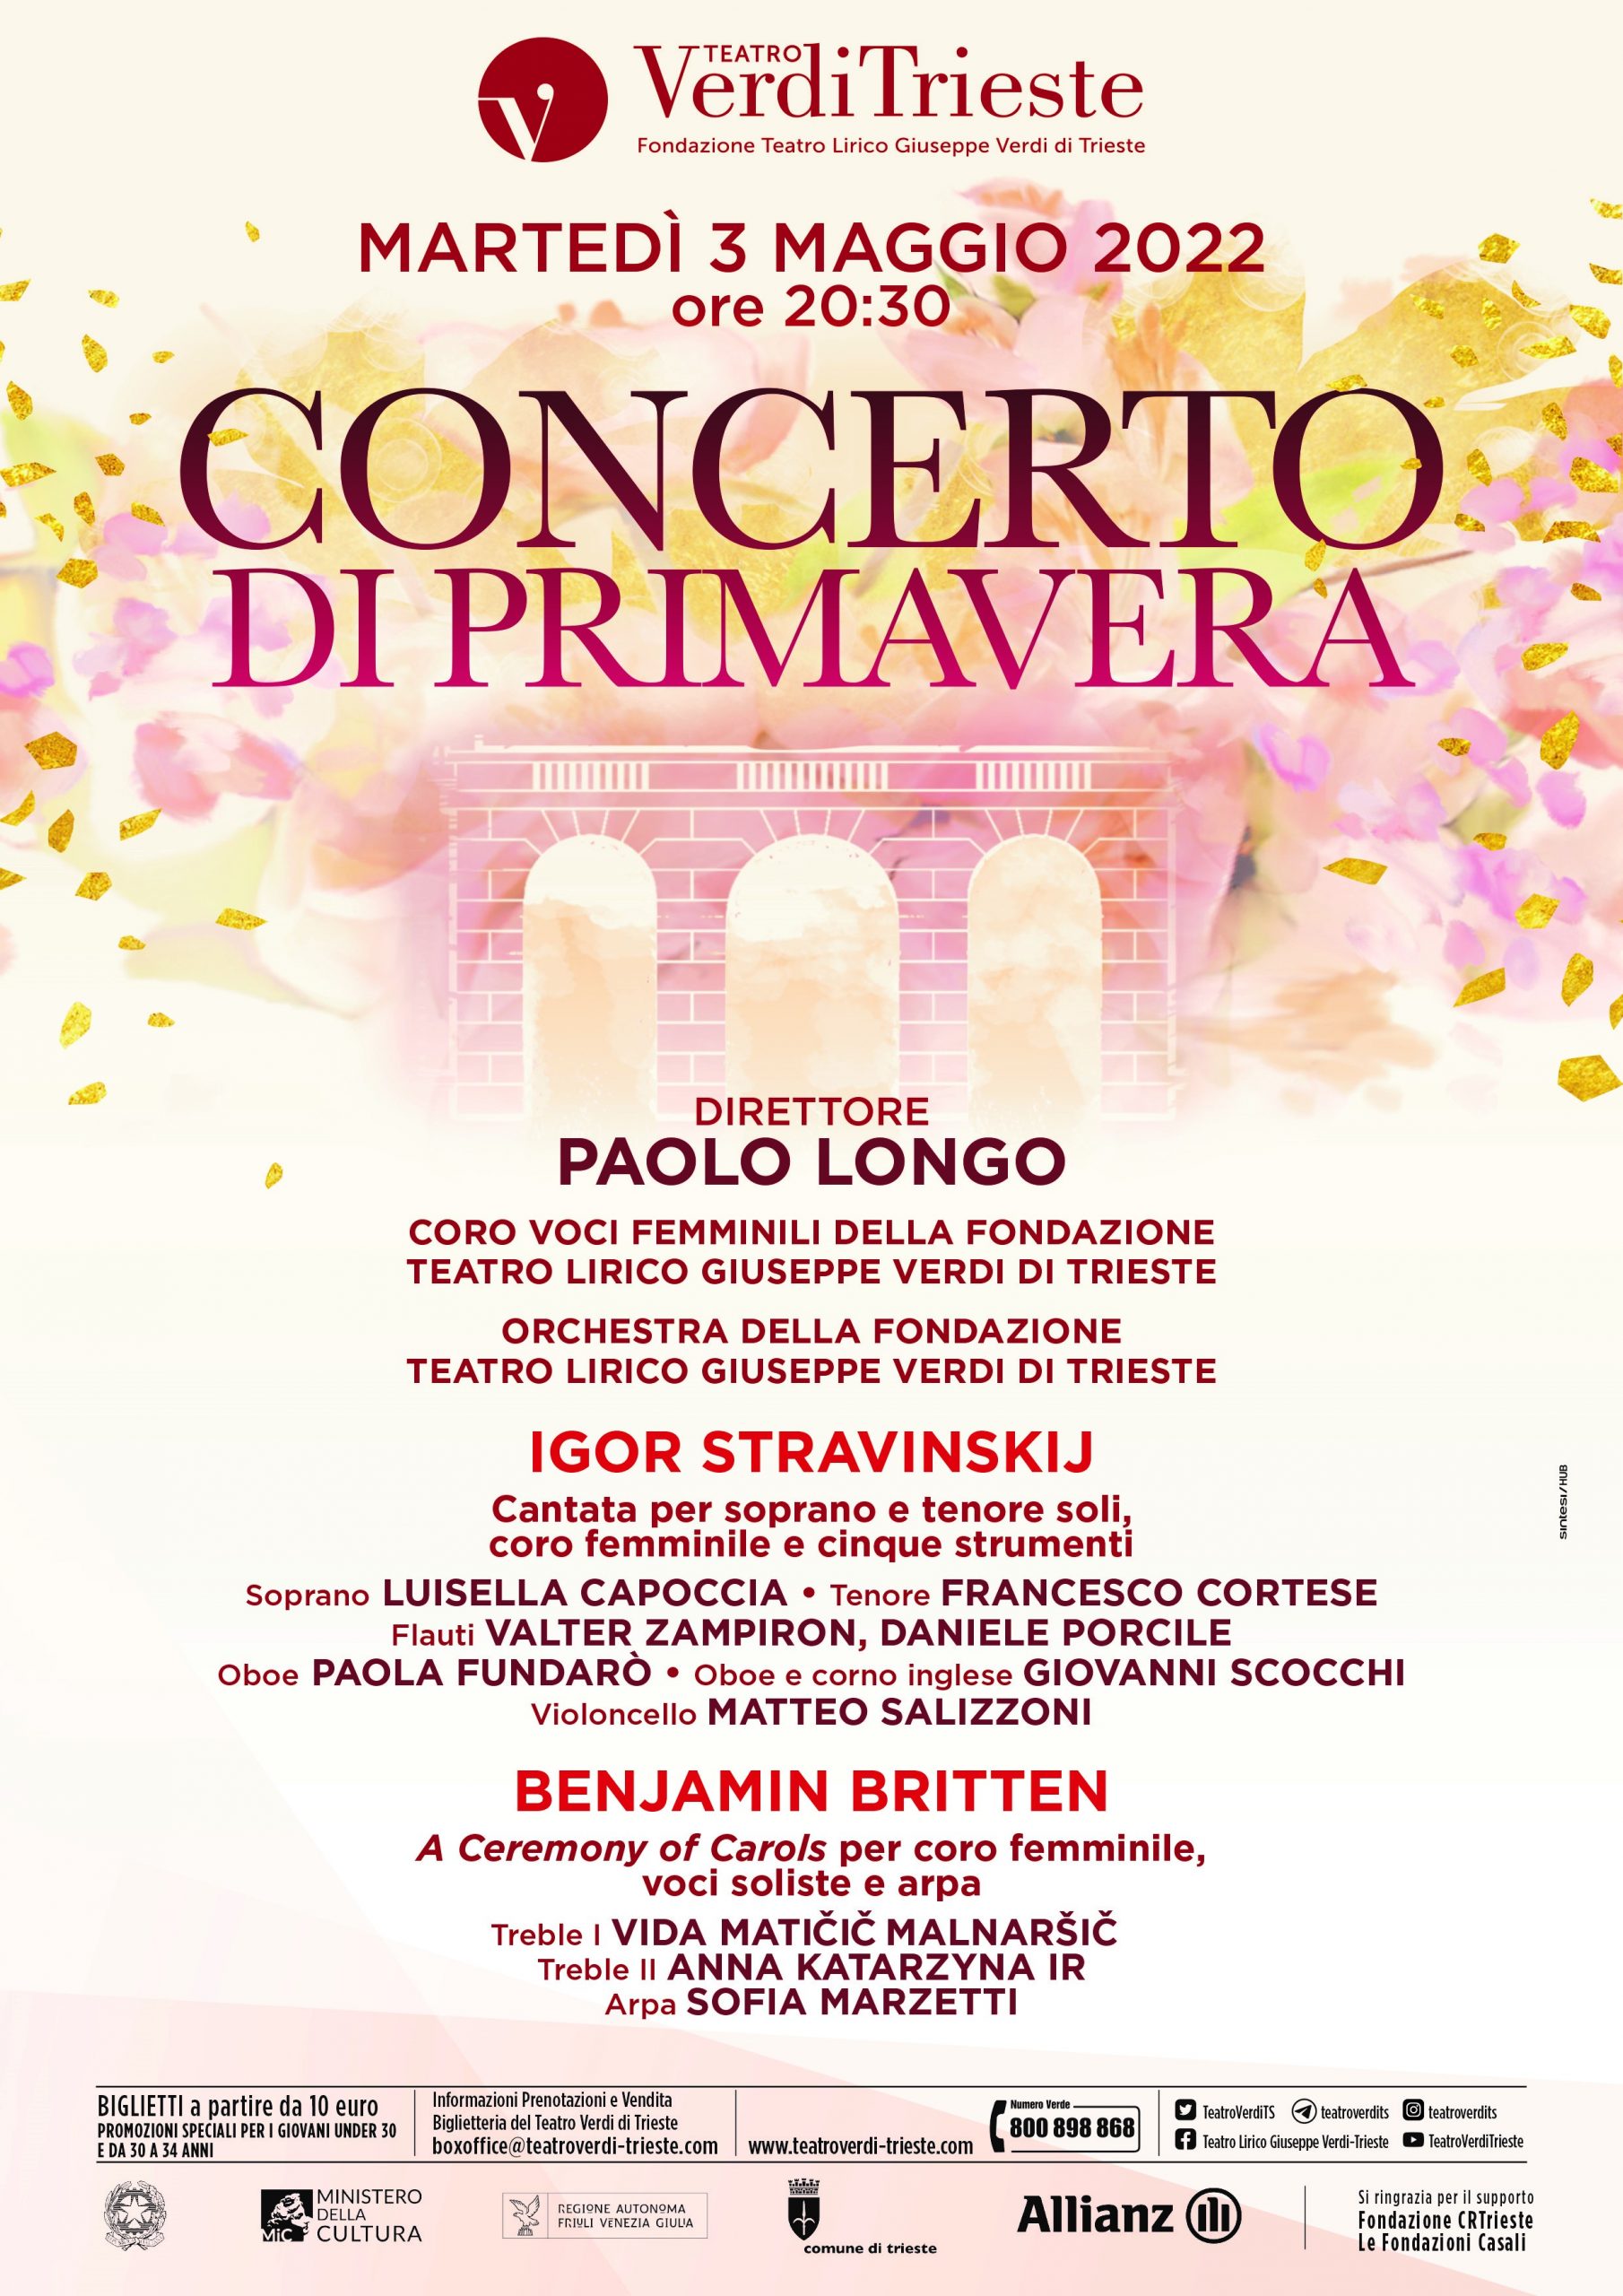 Al Teatro Verdi di Trieste il Concerto di Primavera 3 maggio alle 20.30